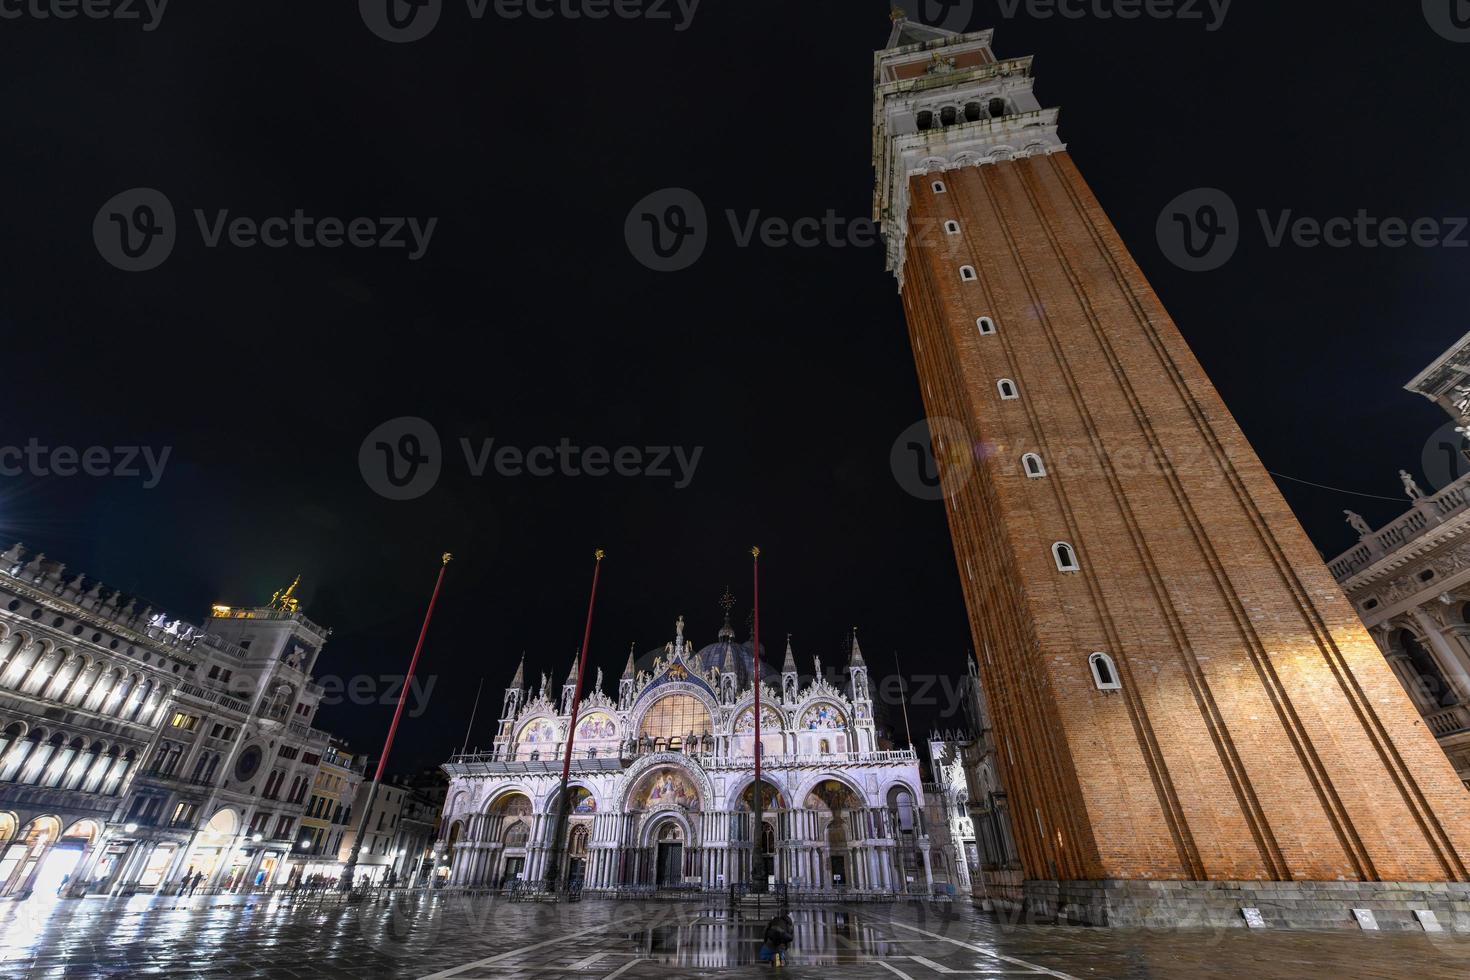 praça de são marcos em veneza itália à noite com reflexos na água. foto